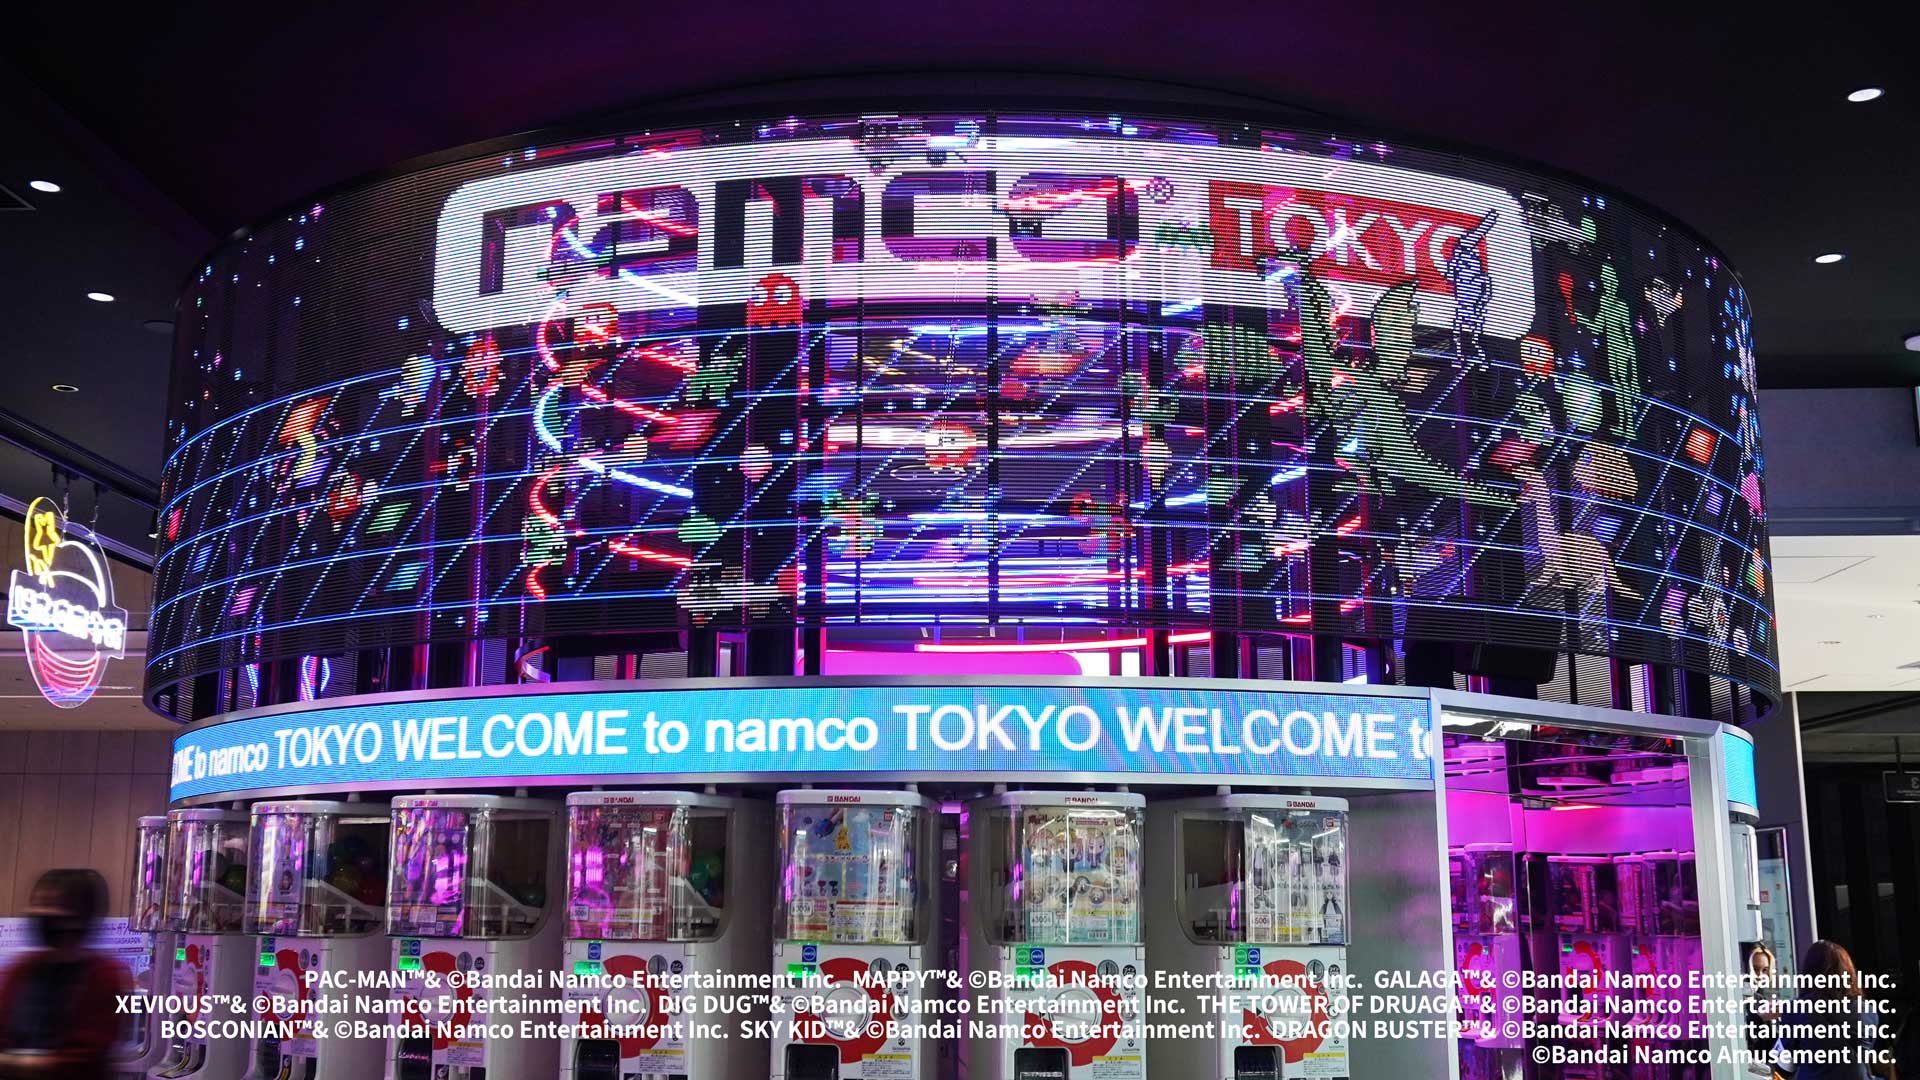 バンダイナムコアミューズメント「namco TOKYO Welcome movie」シースルービジョン映像